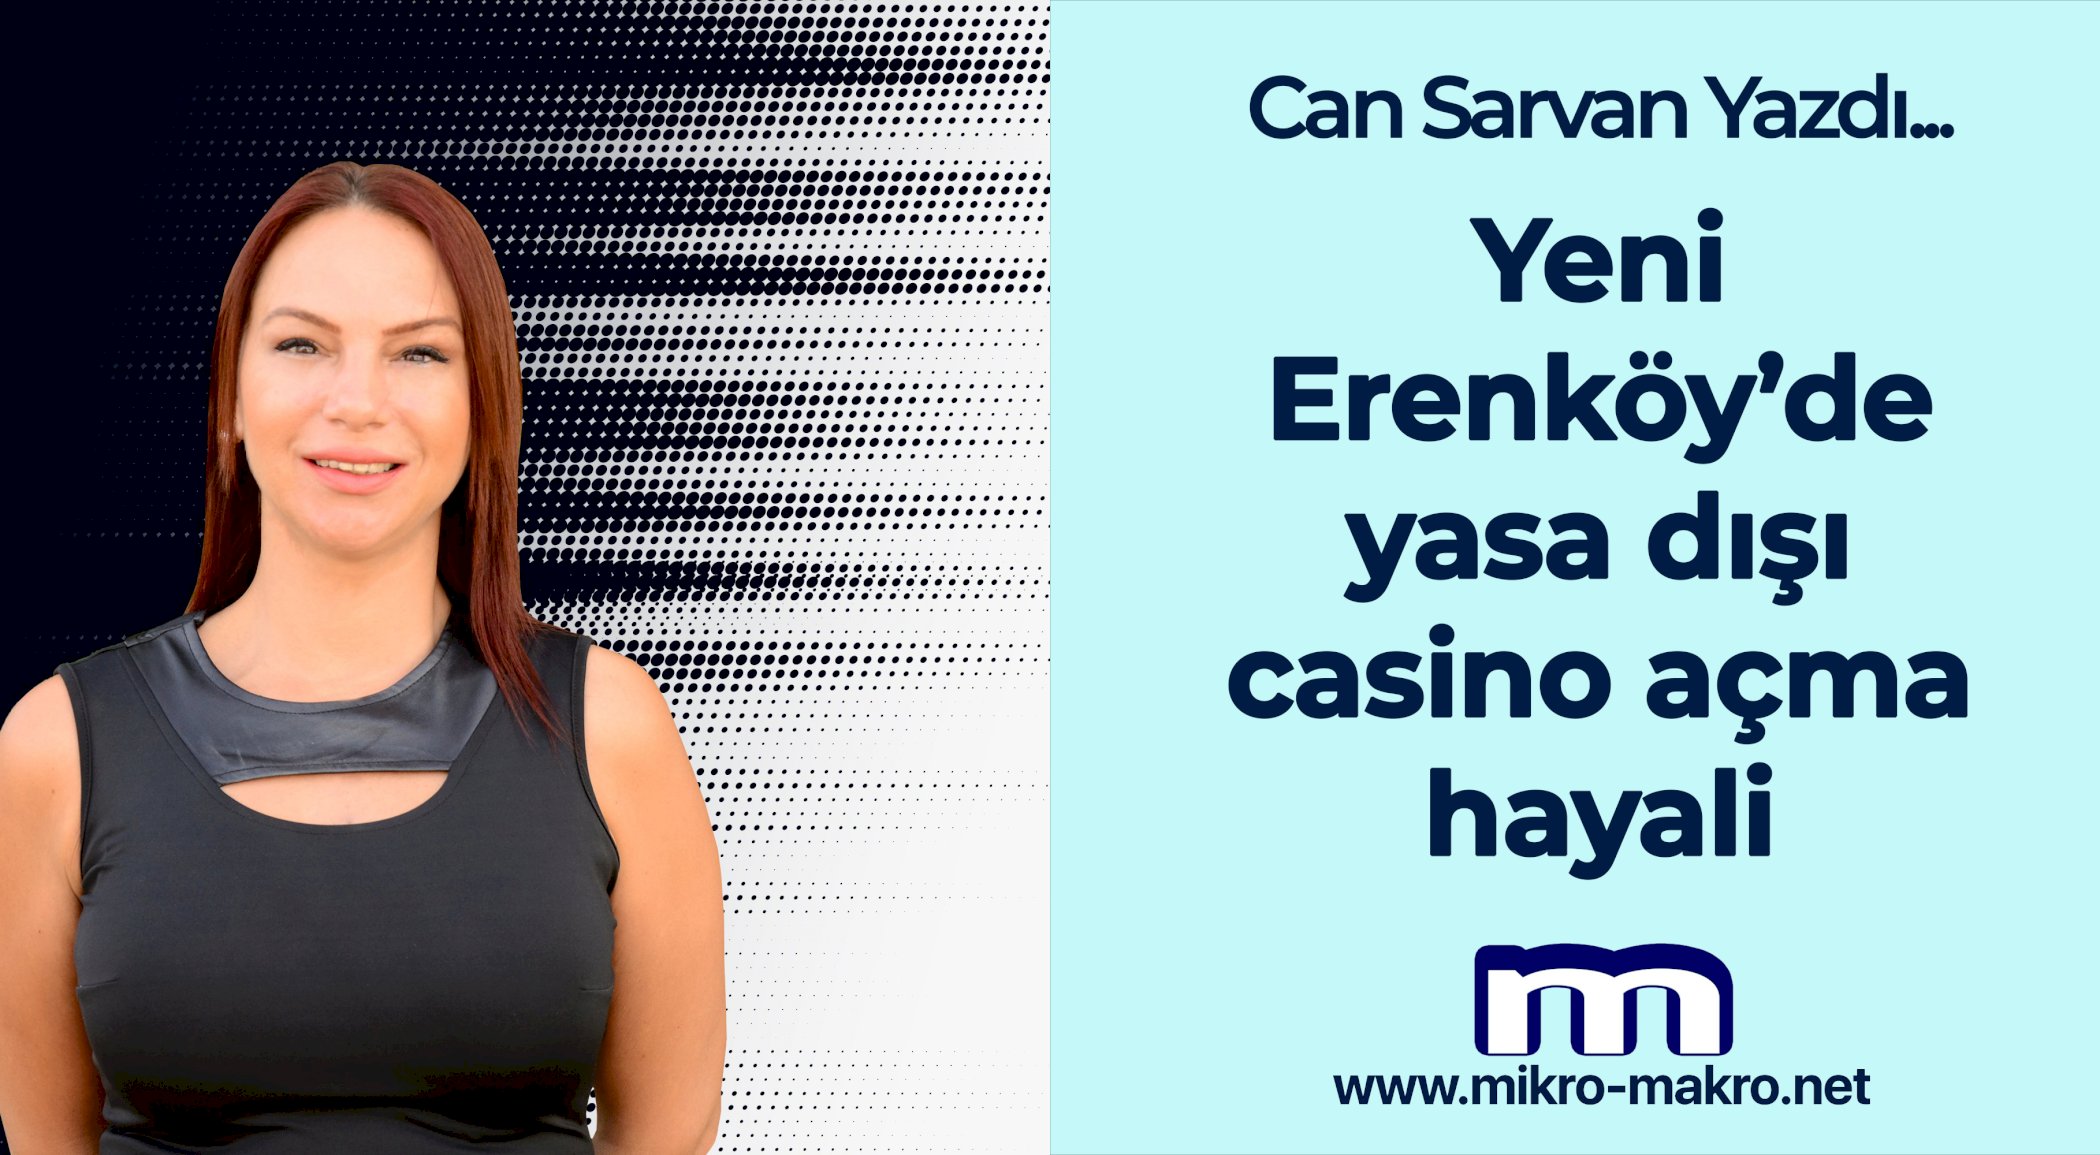 https://mail.mikro-makro.net/yeni-erenkoye-yasa-disi-casino-mu-acilacak